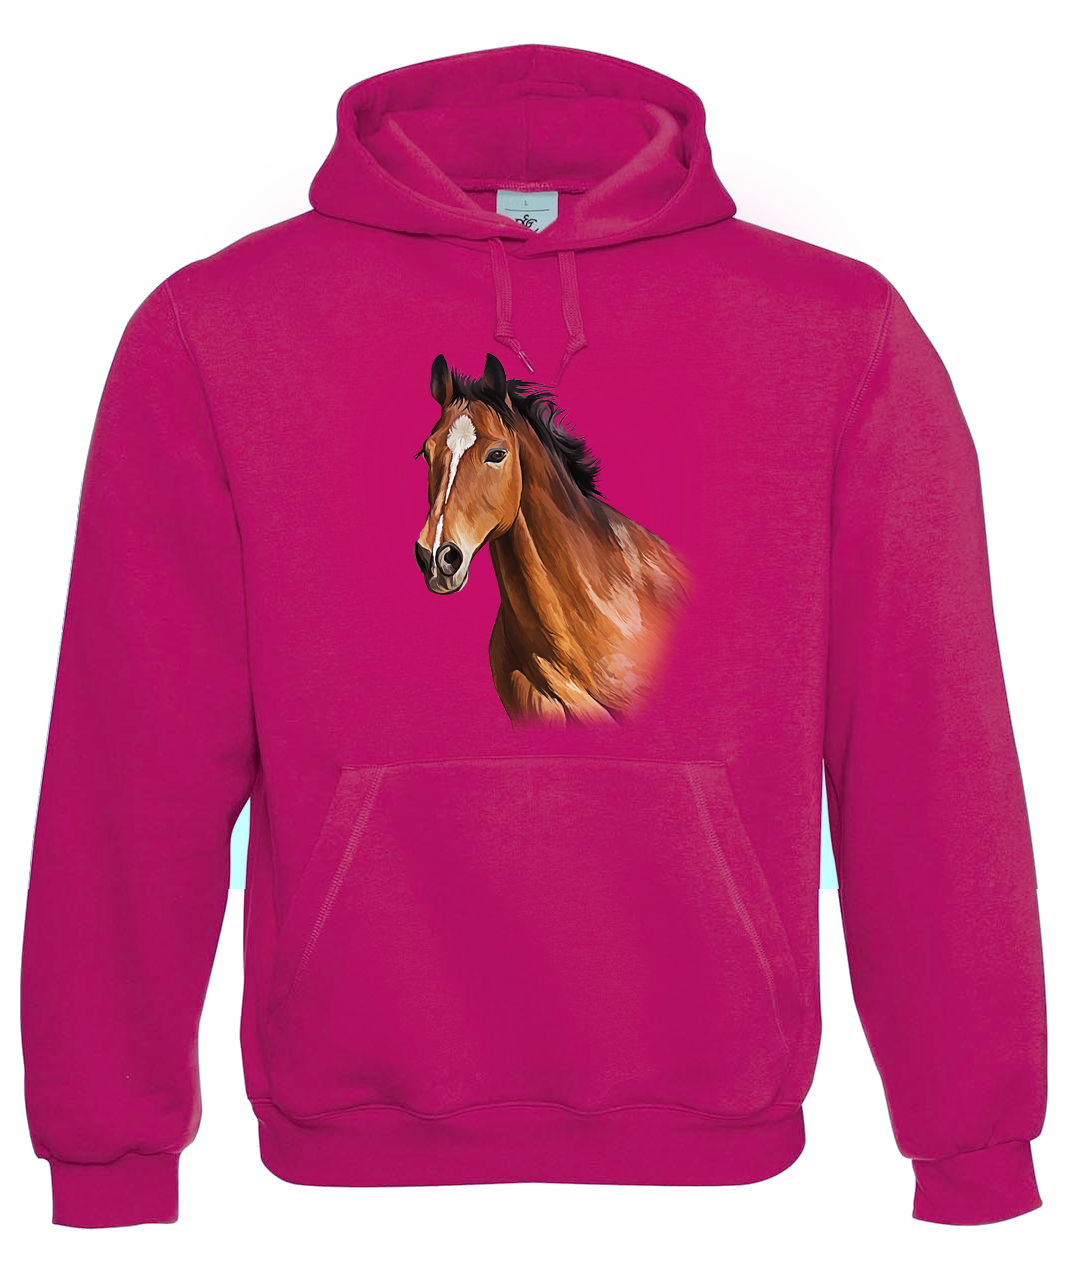 Mikina s koněm - Hnědák Velikost: M, Barva: Tmavě růžová